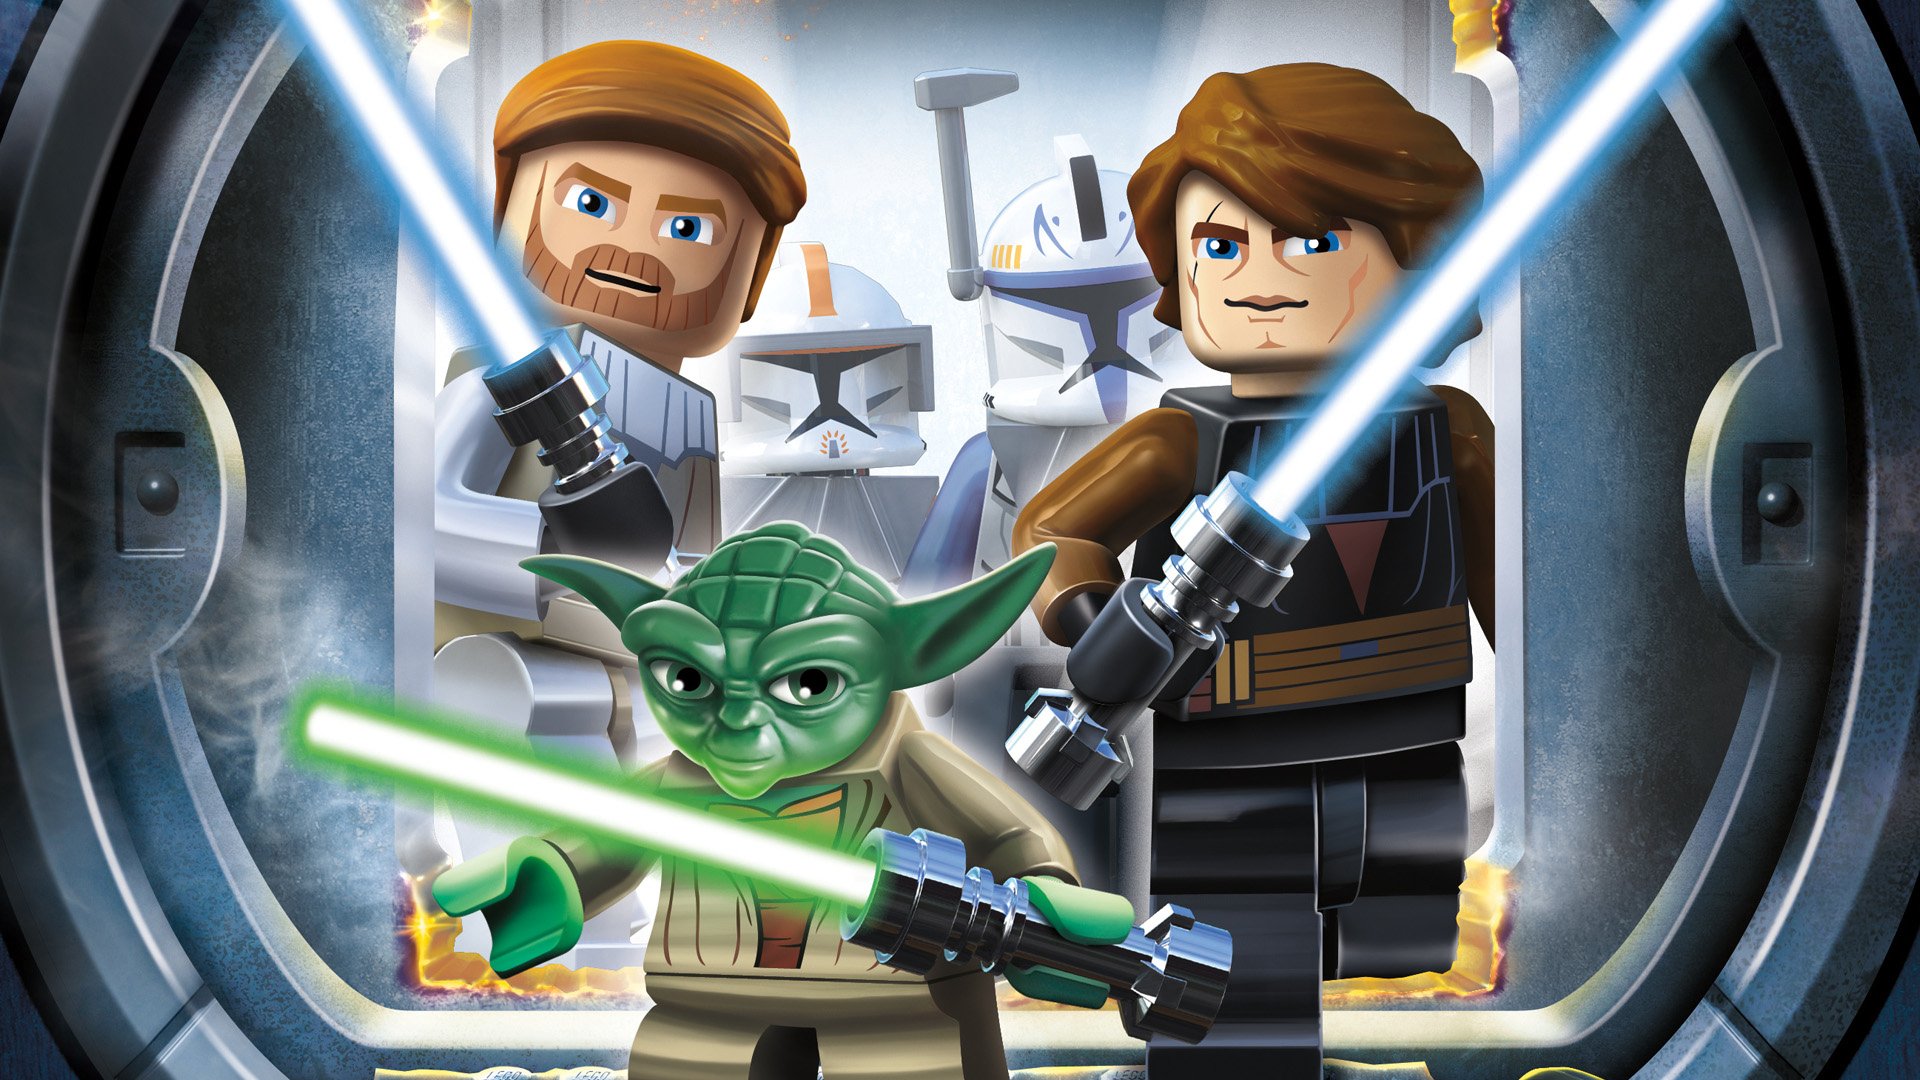 Lego Star Wars The Clone Wars - HD Wallpaper 